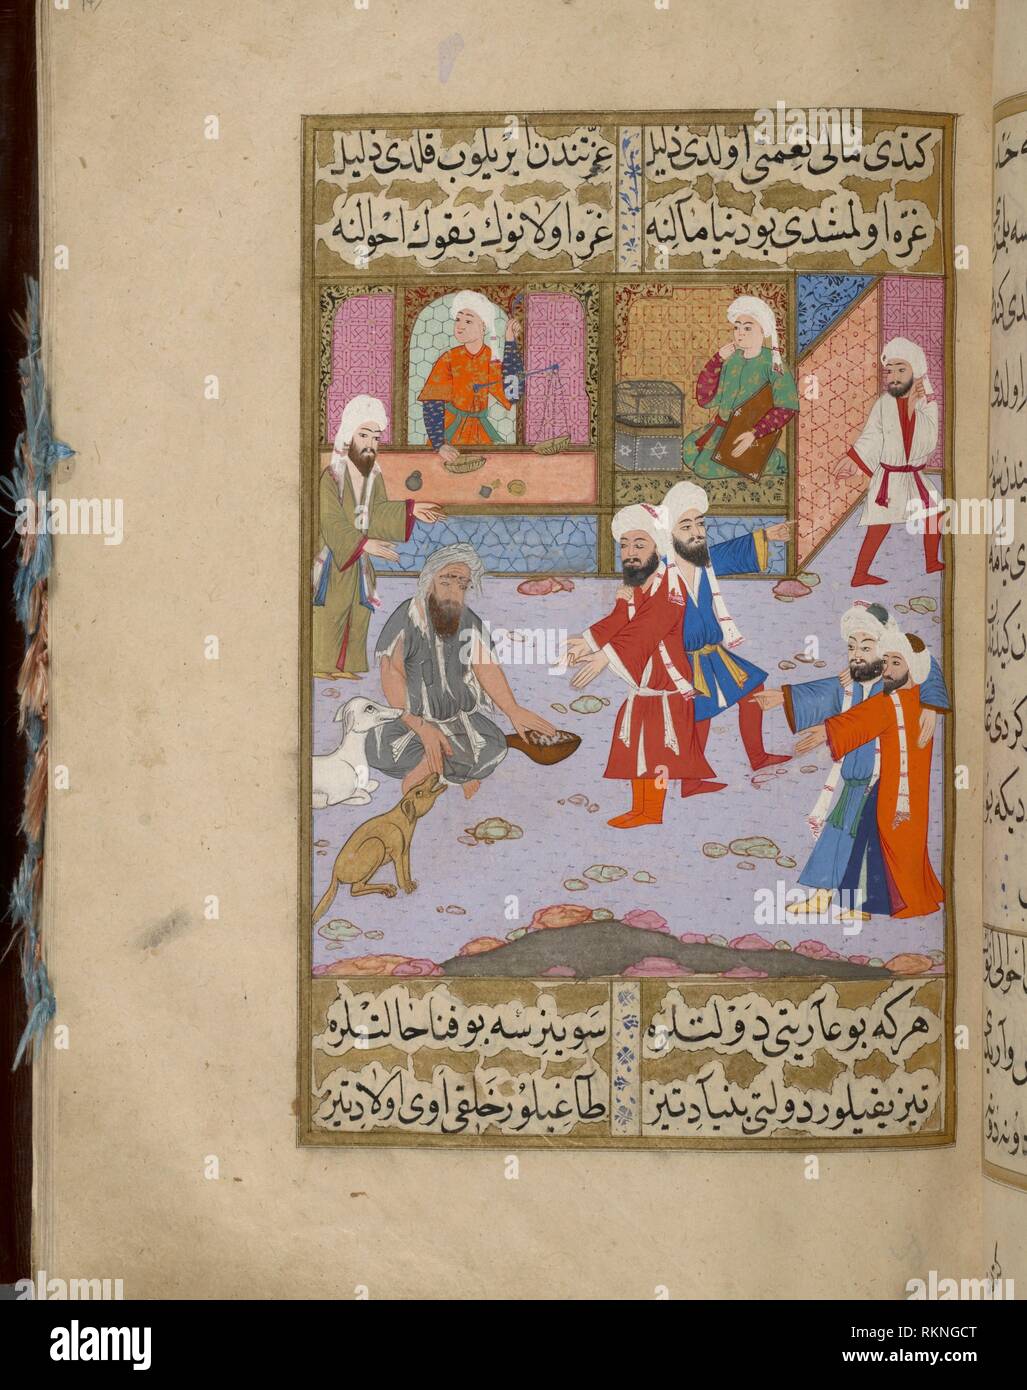 Einem ehemaligen reichen Mann, Najiz ibn Farrâsh, die durch den Propheten verflucht war, jetzt ein Bettler. Siyar - ich Nabî. Erstellungsdatum: 1594 - 1595 (Geschlossen) Platz: Stockfoto